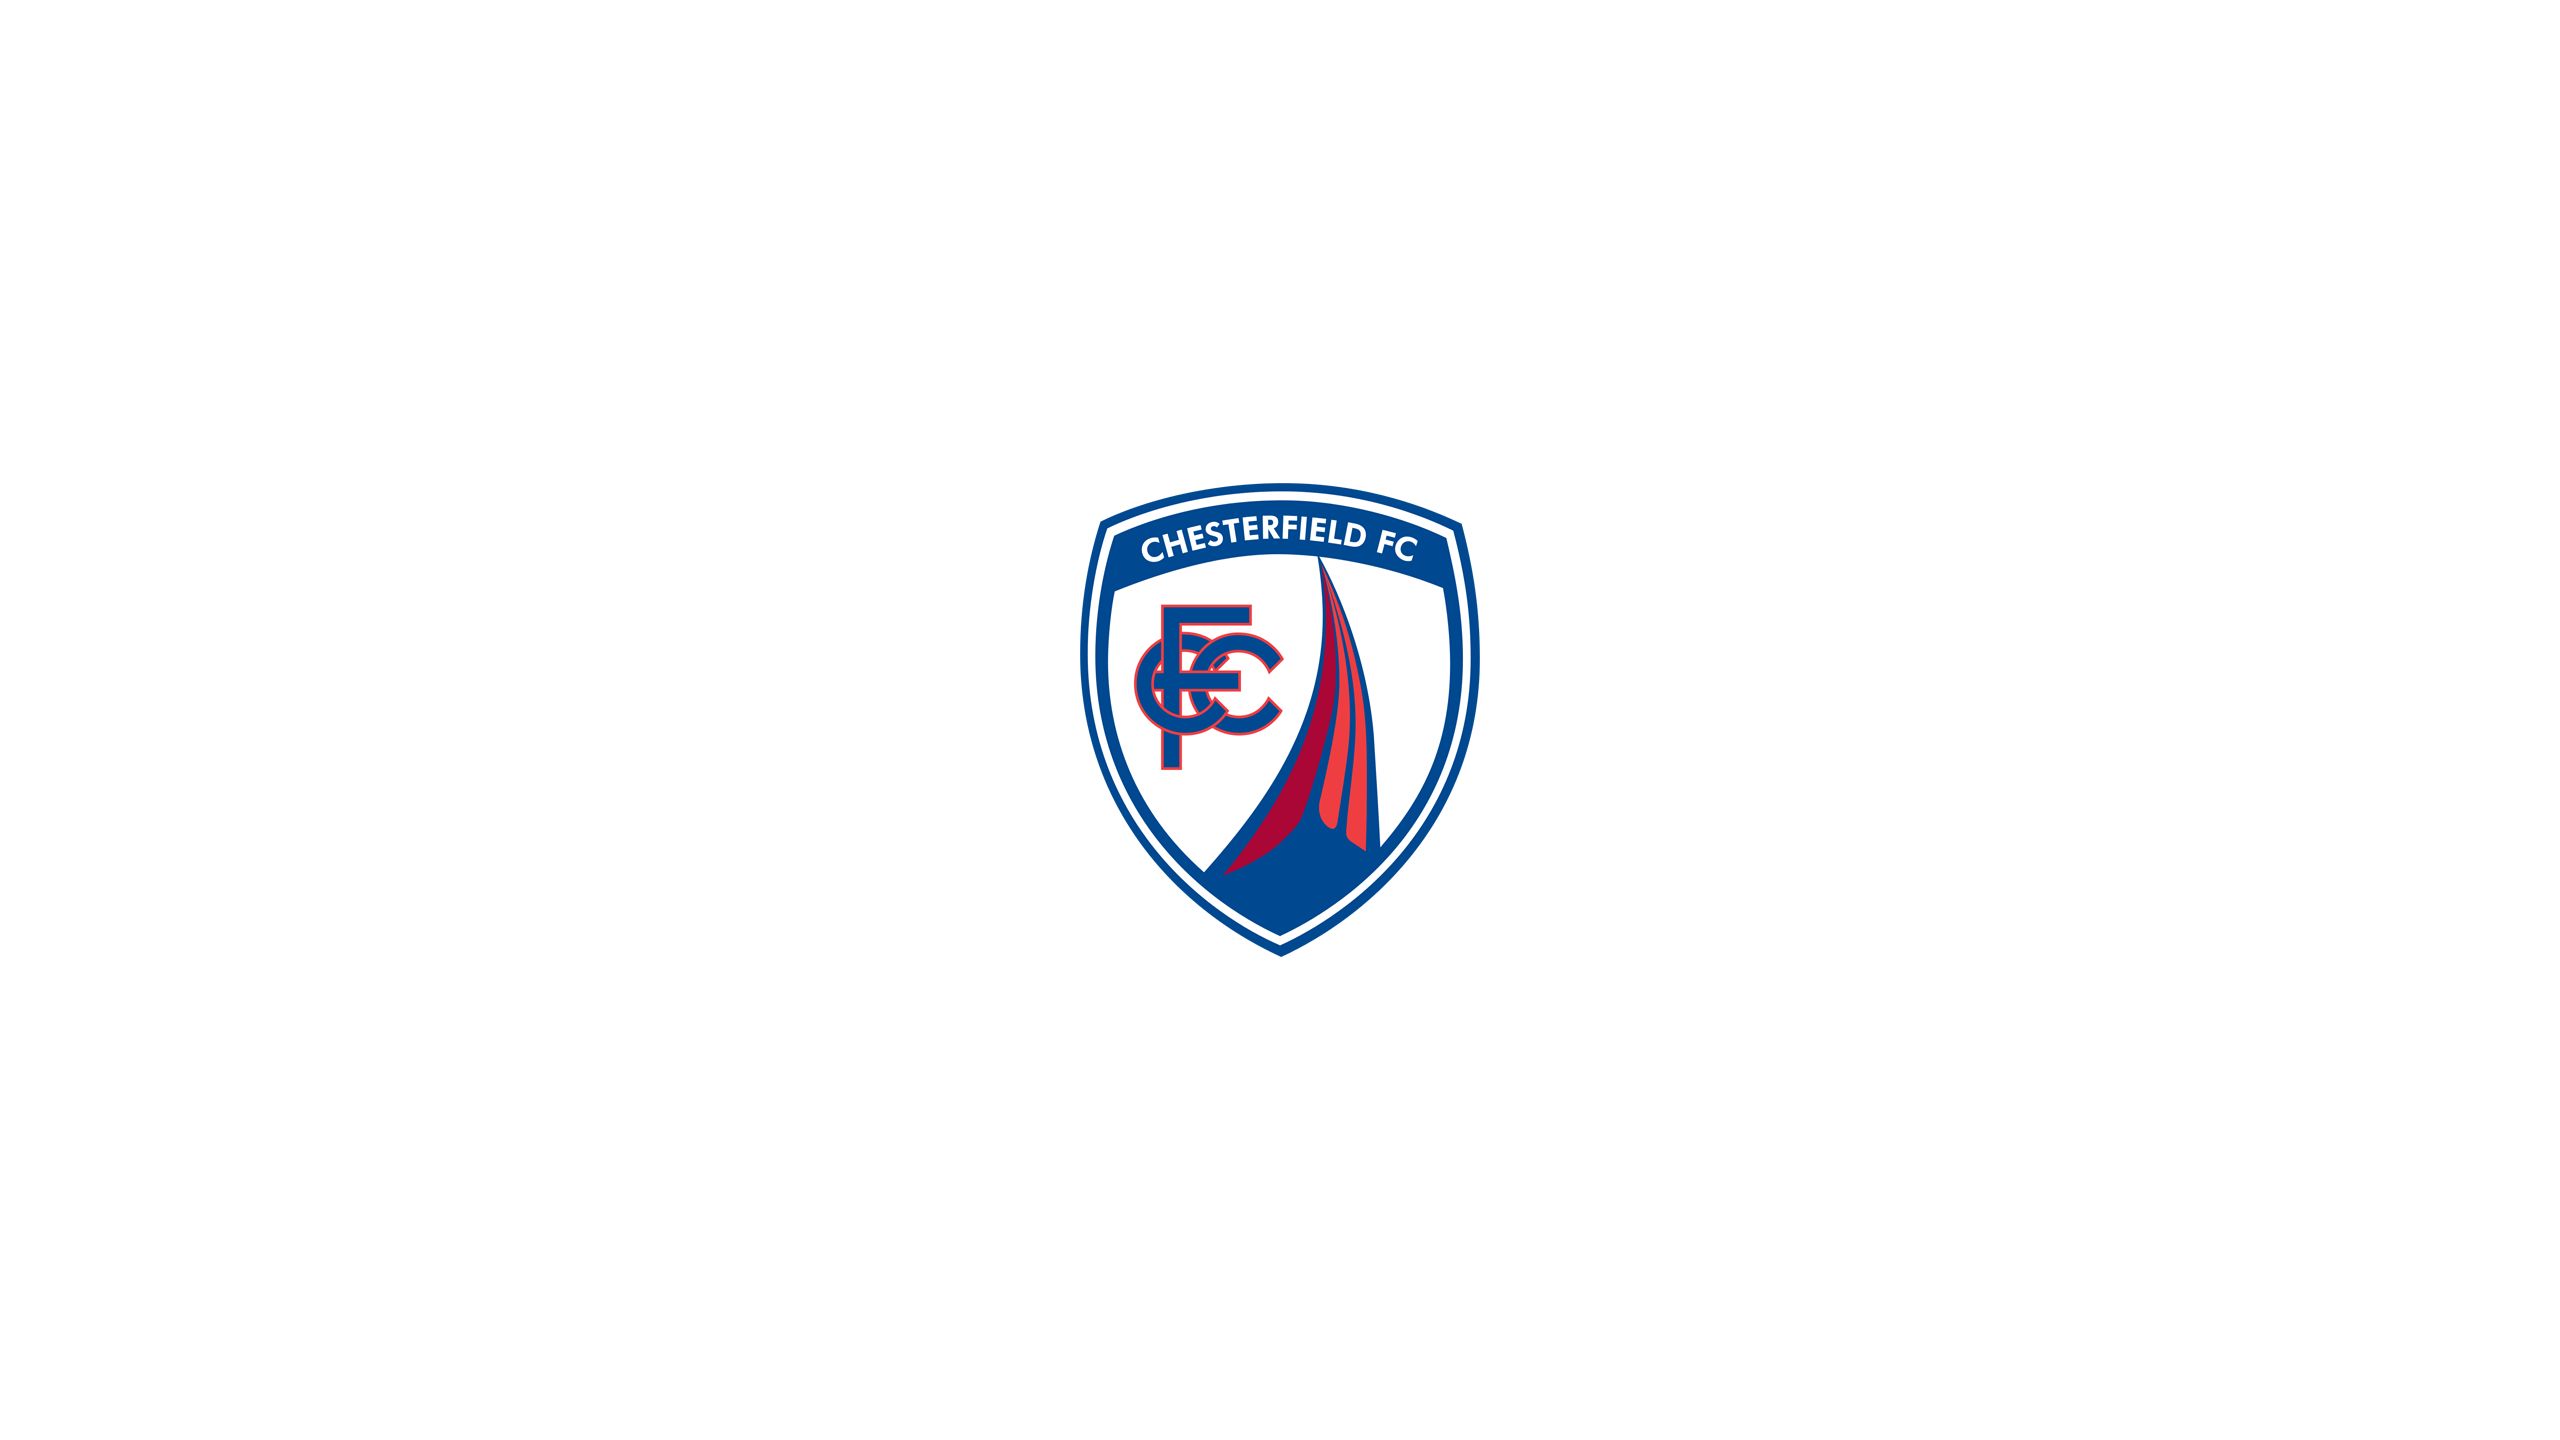 無料モバイル壁紙スポーツ, サッカー, ロゴ, 象徴, チェスターフィールド Fcをダウンロードします。